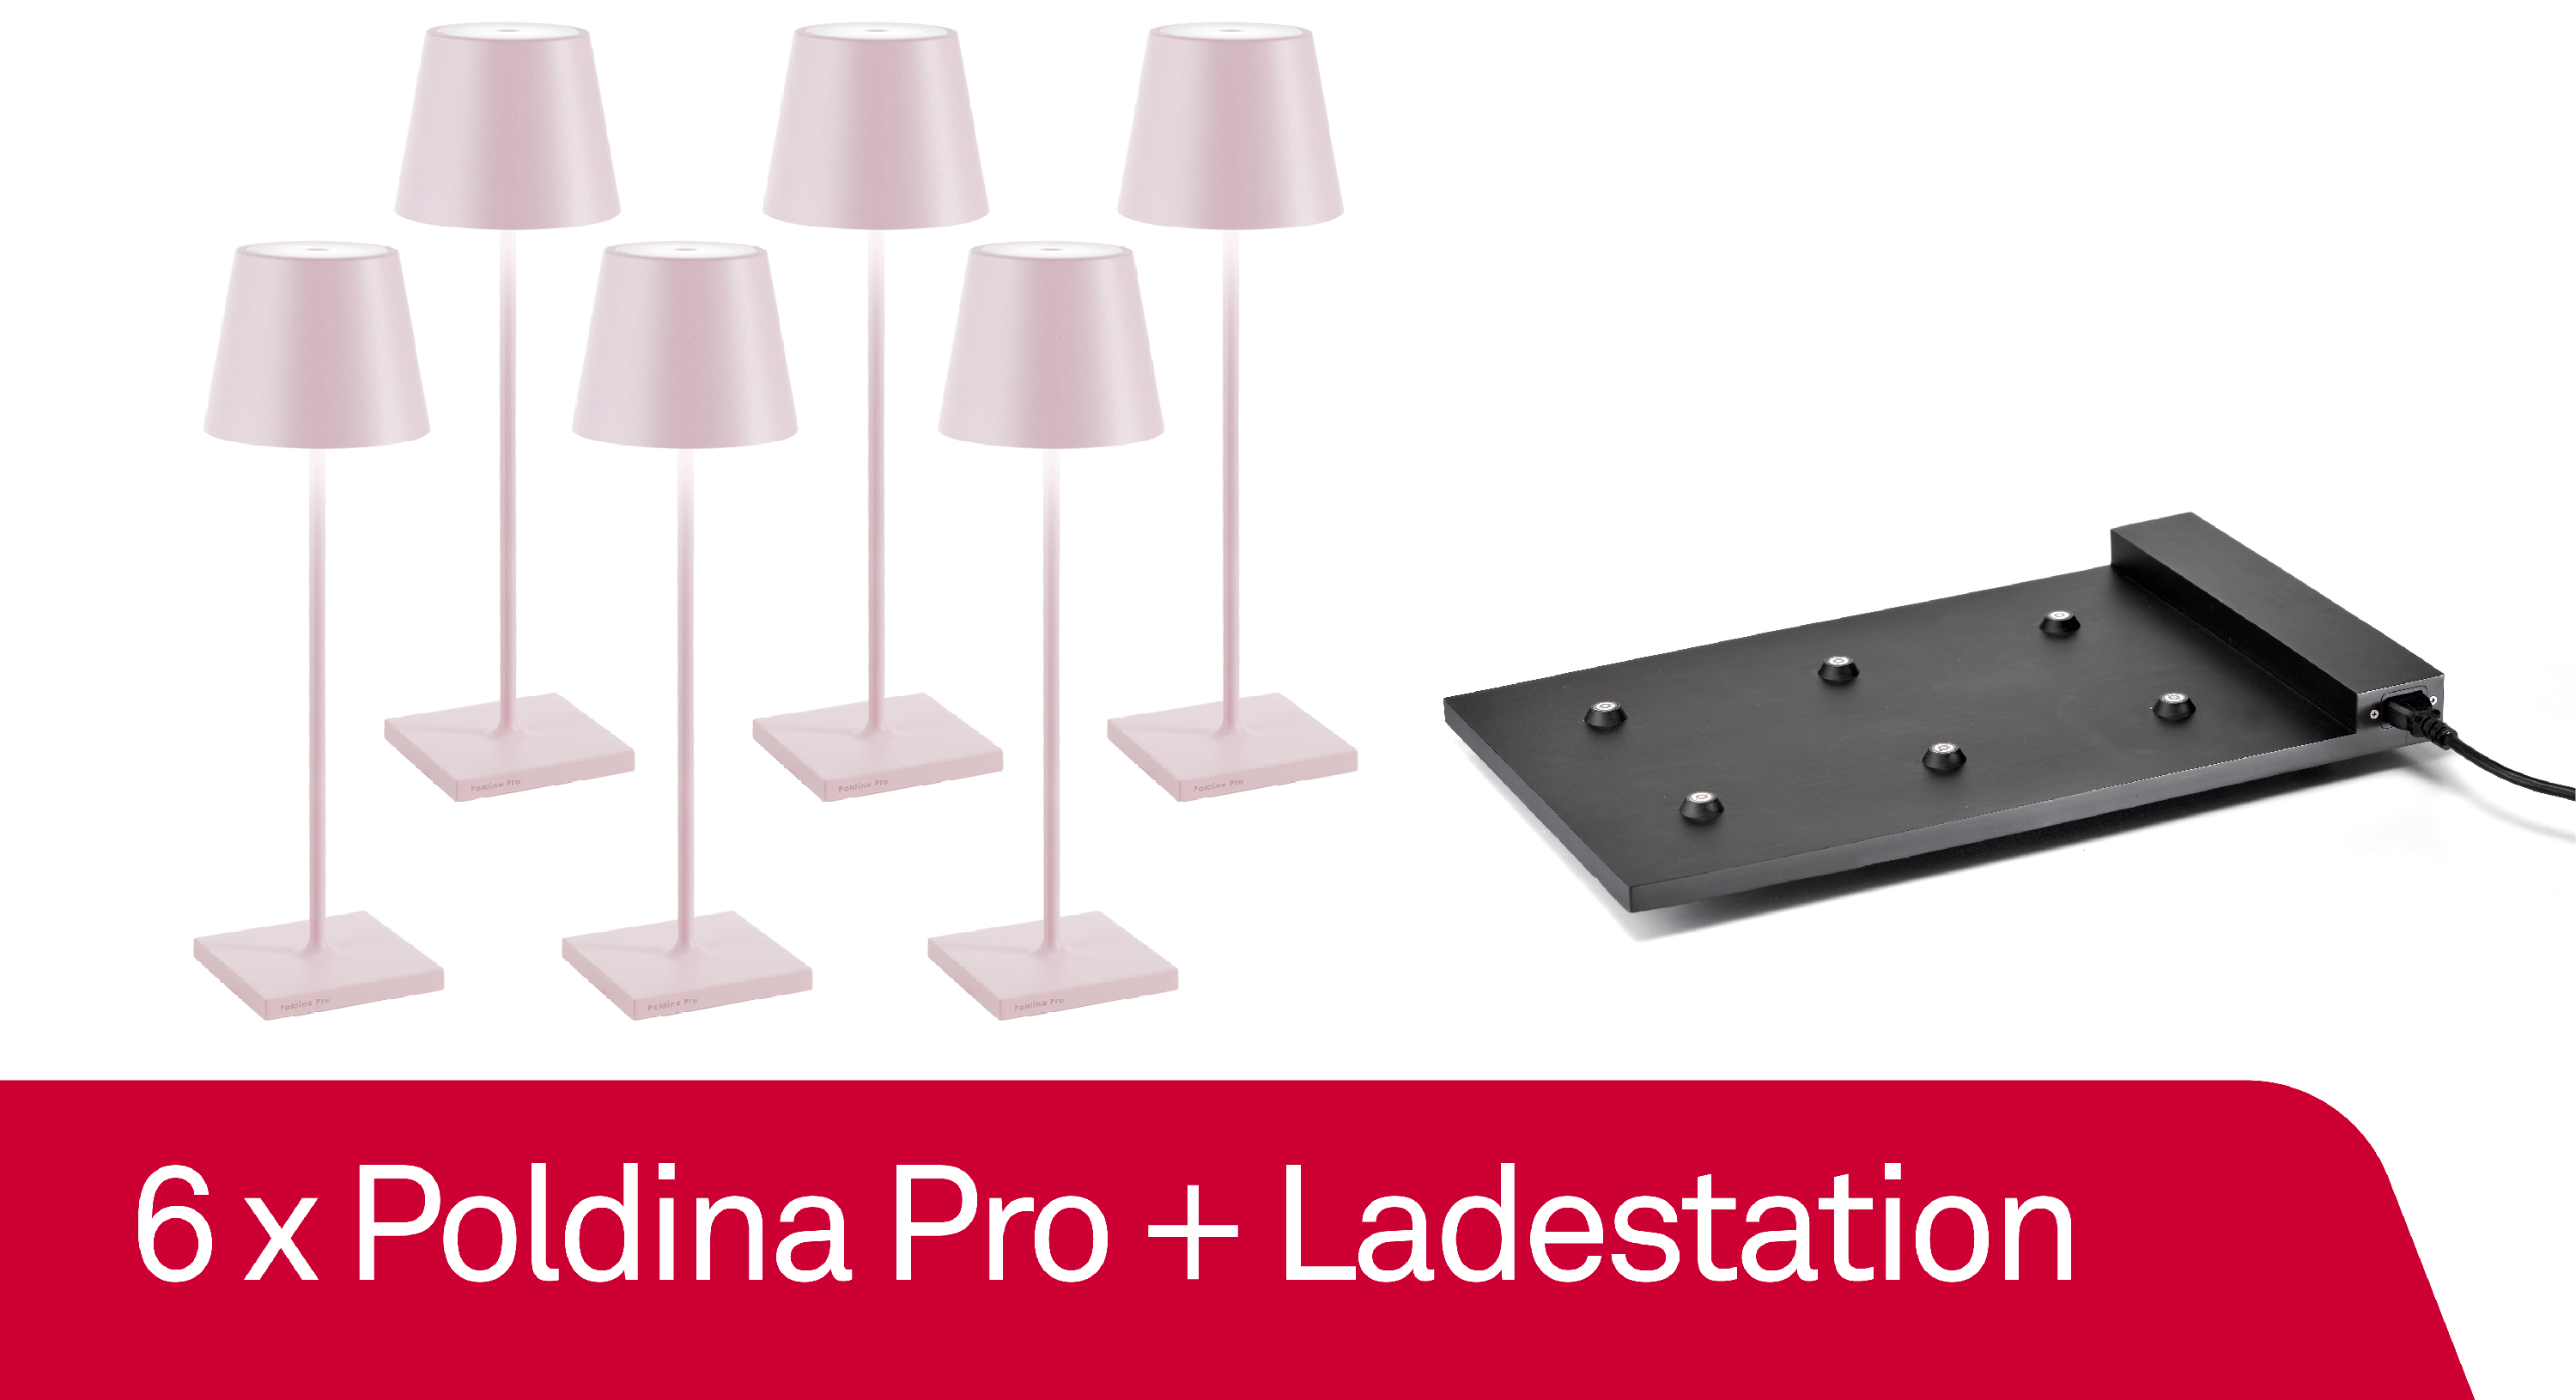 6 x Zafferano Poldina Pro Rosa + Ladestation - Bundle